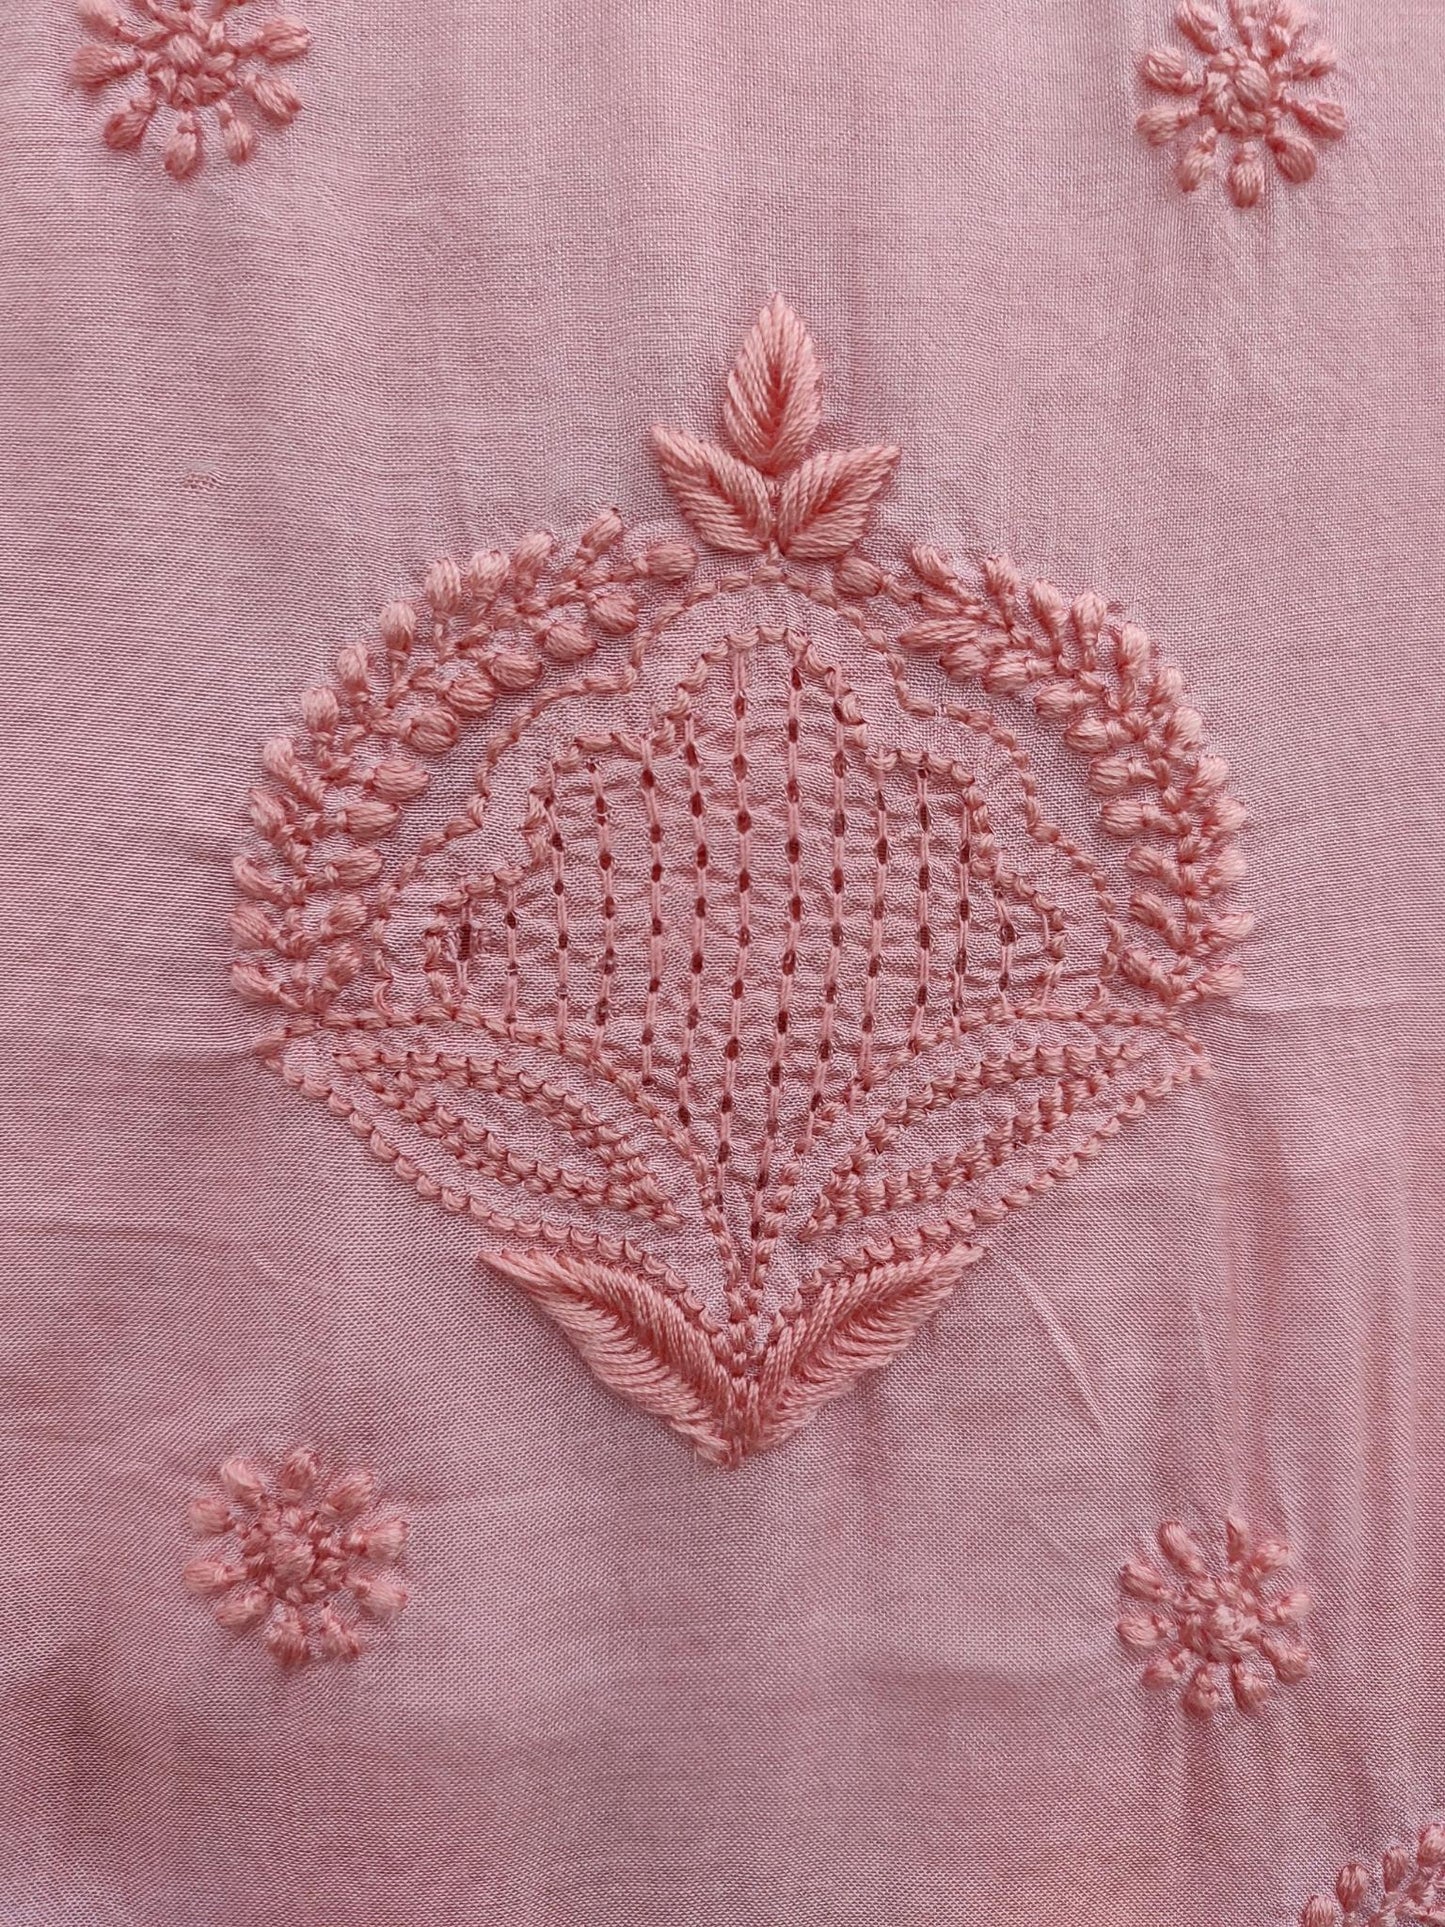 Shyamal Chikan Hand Embroidered Pink Pure Chiffon Lucknowi Chikankari Unstitched Suit Piece ( Kurta  Dupatta Set ) - S20479